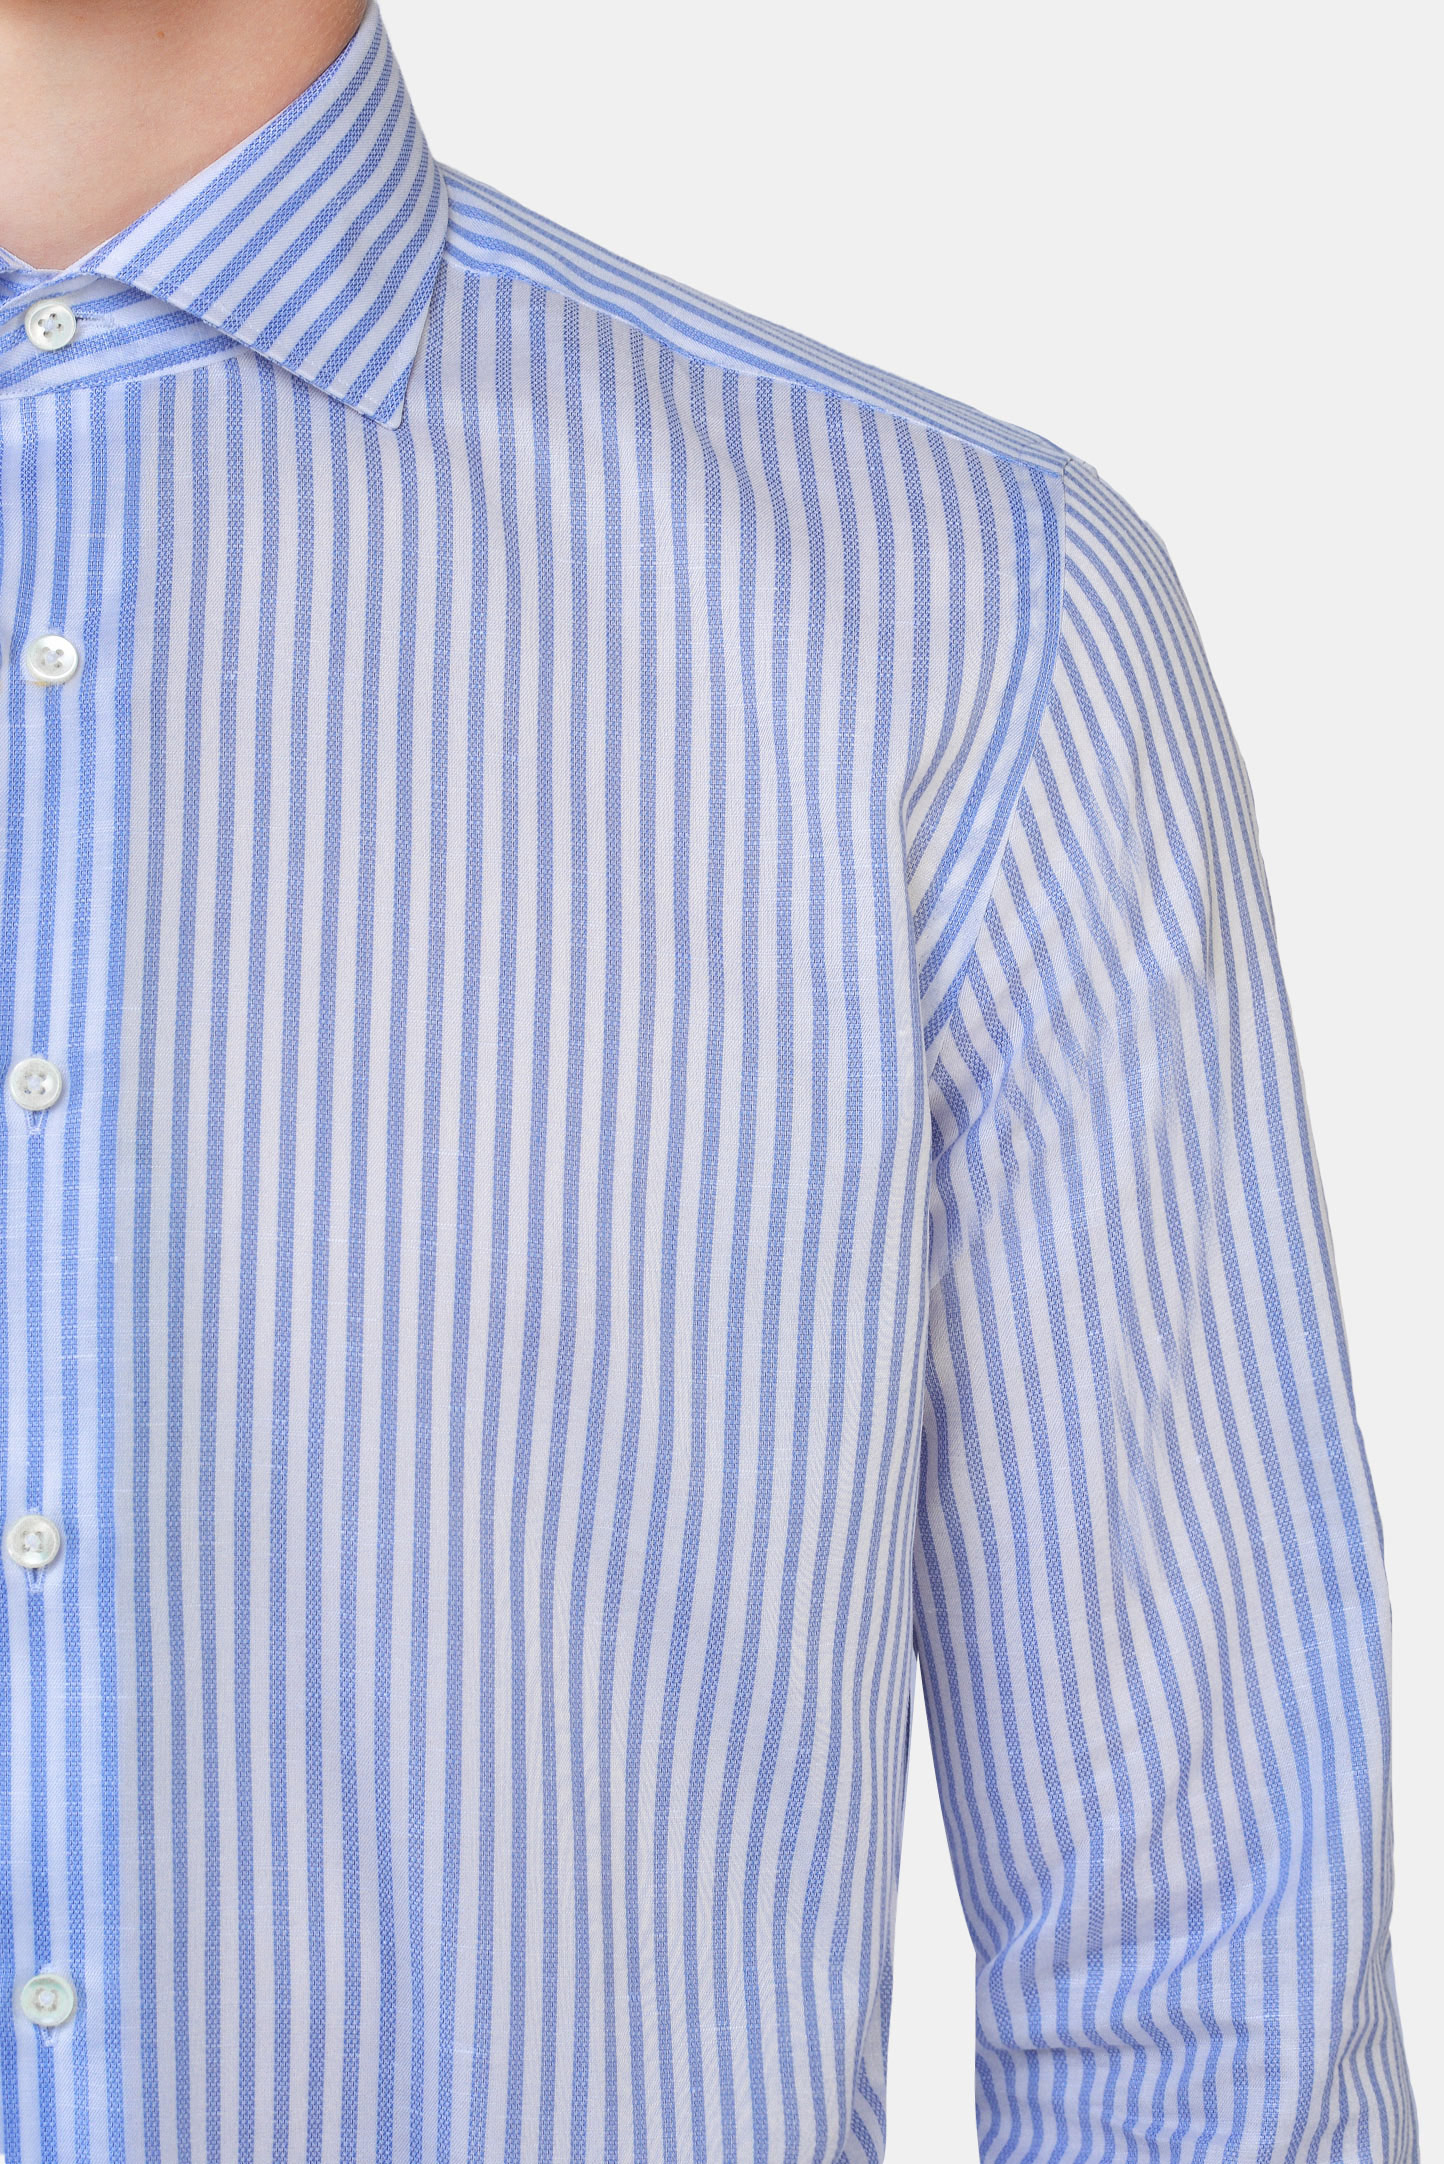 Рубашка CANALI GR02289/401, цвет: Голубой, Мужской